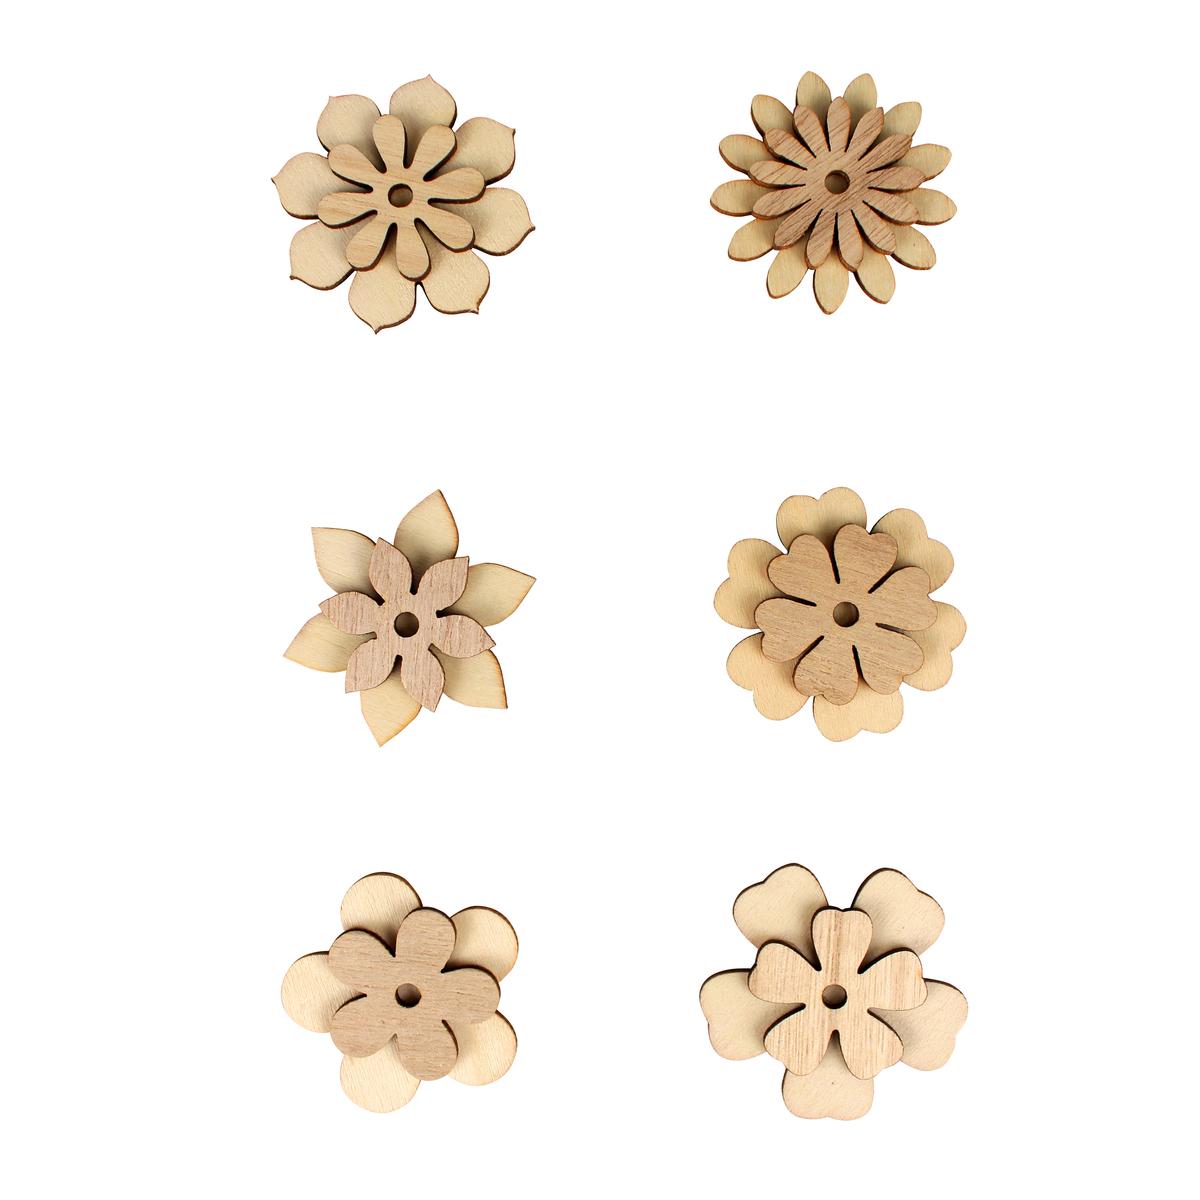 Stickers bois fleurs avec pastille adhésive 5 x 4 cm x 6 pcs